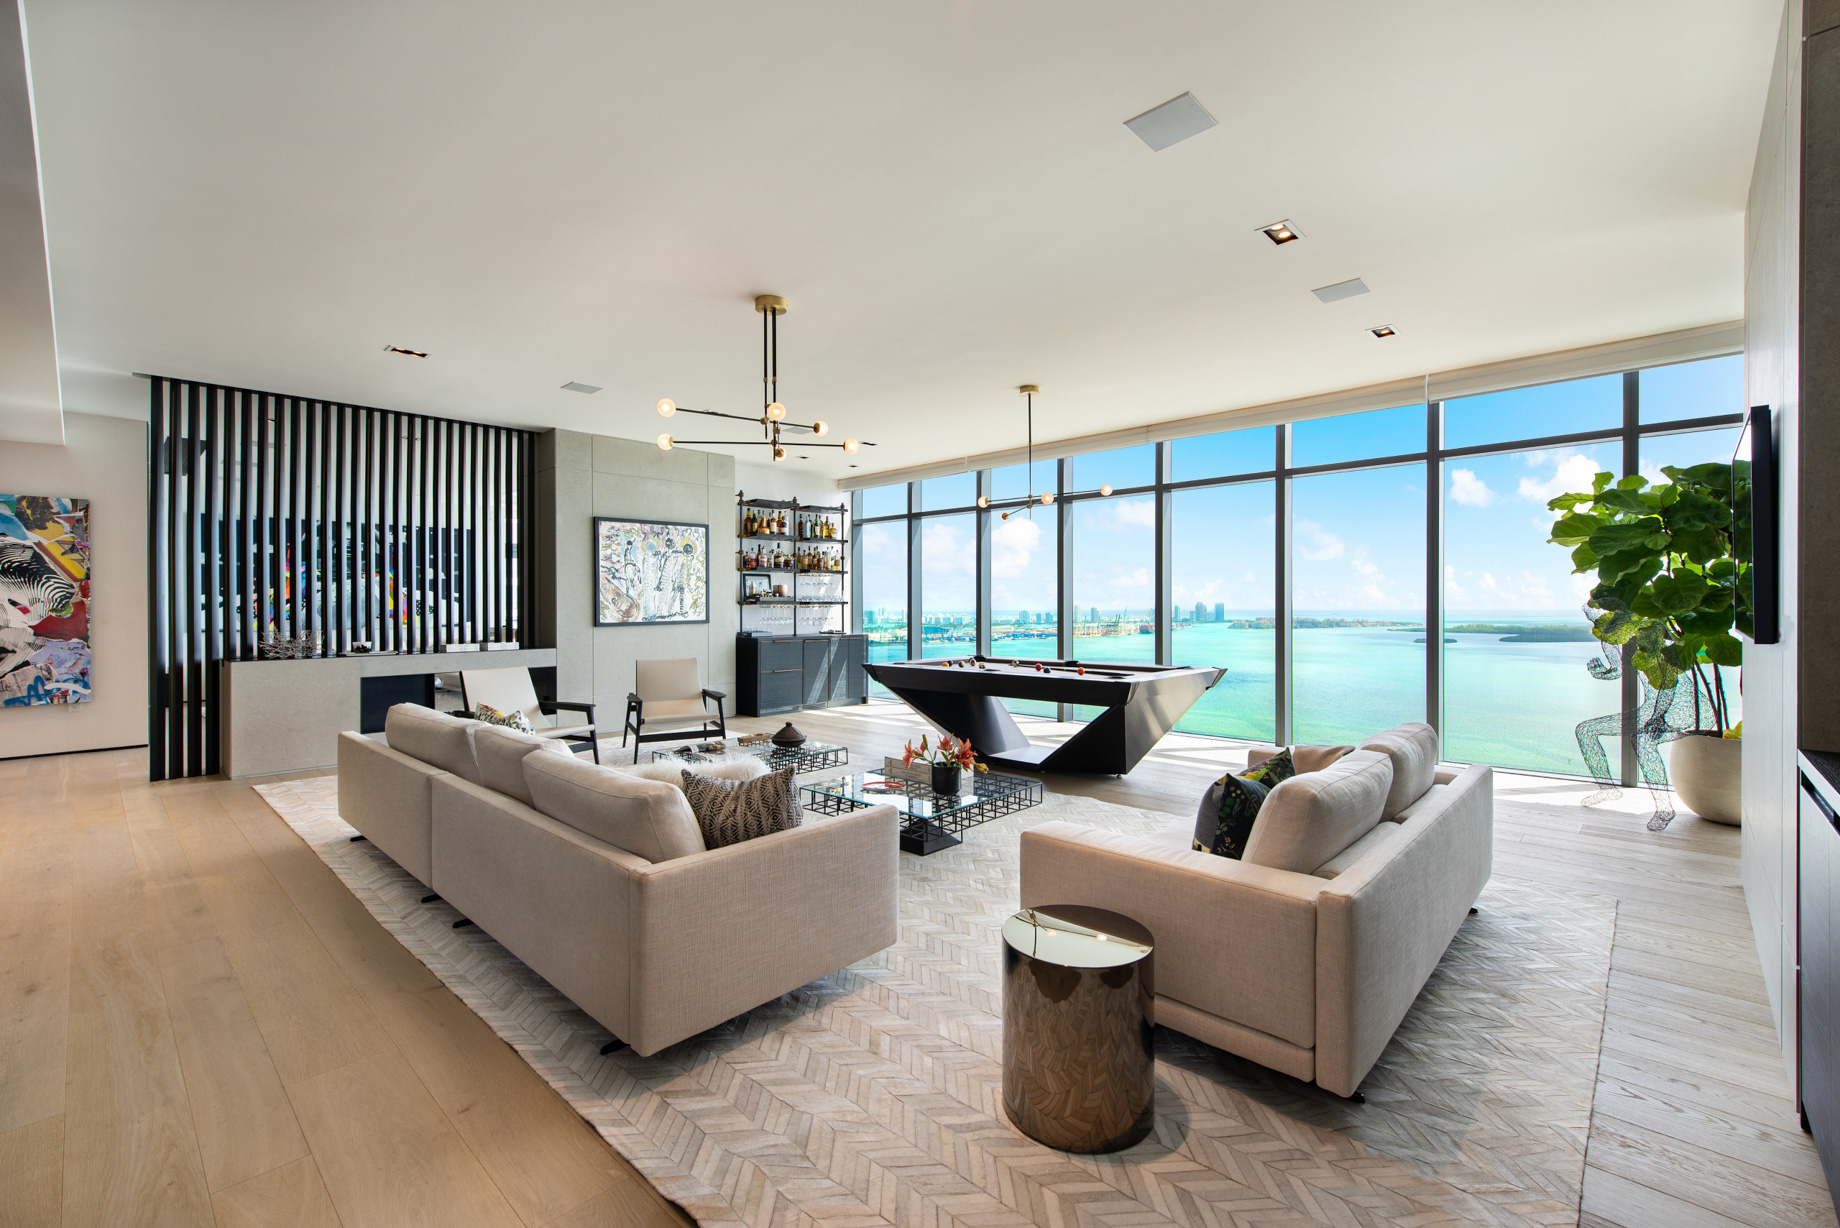 Echo Brickell Apartment Interior Design Miami, FL, USA – Blanca Wall